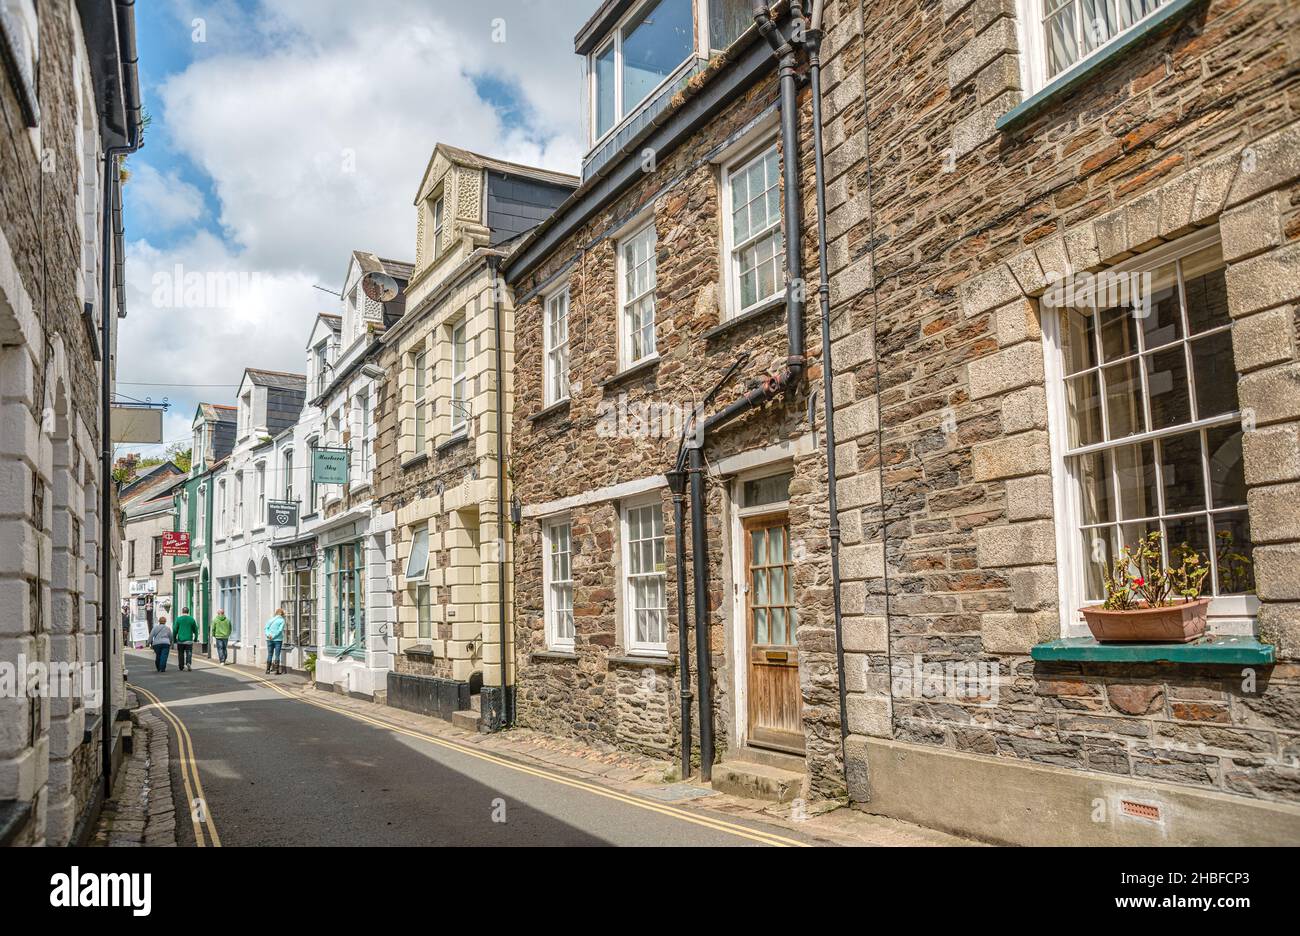 Maisons historiques dans une rue étroite dans le port de Mevagissey, Cornouailles, Angleterre, Royaume-Uni Banque D'Images